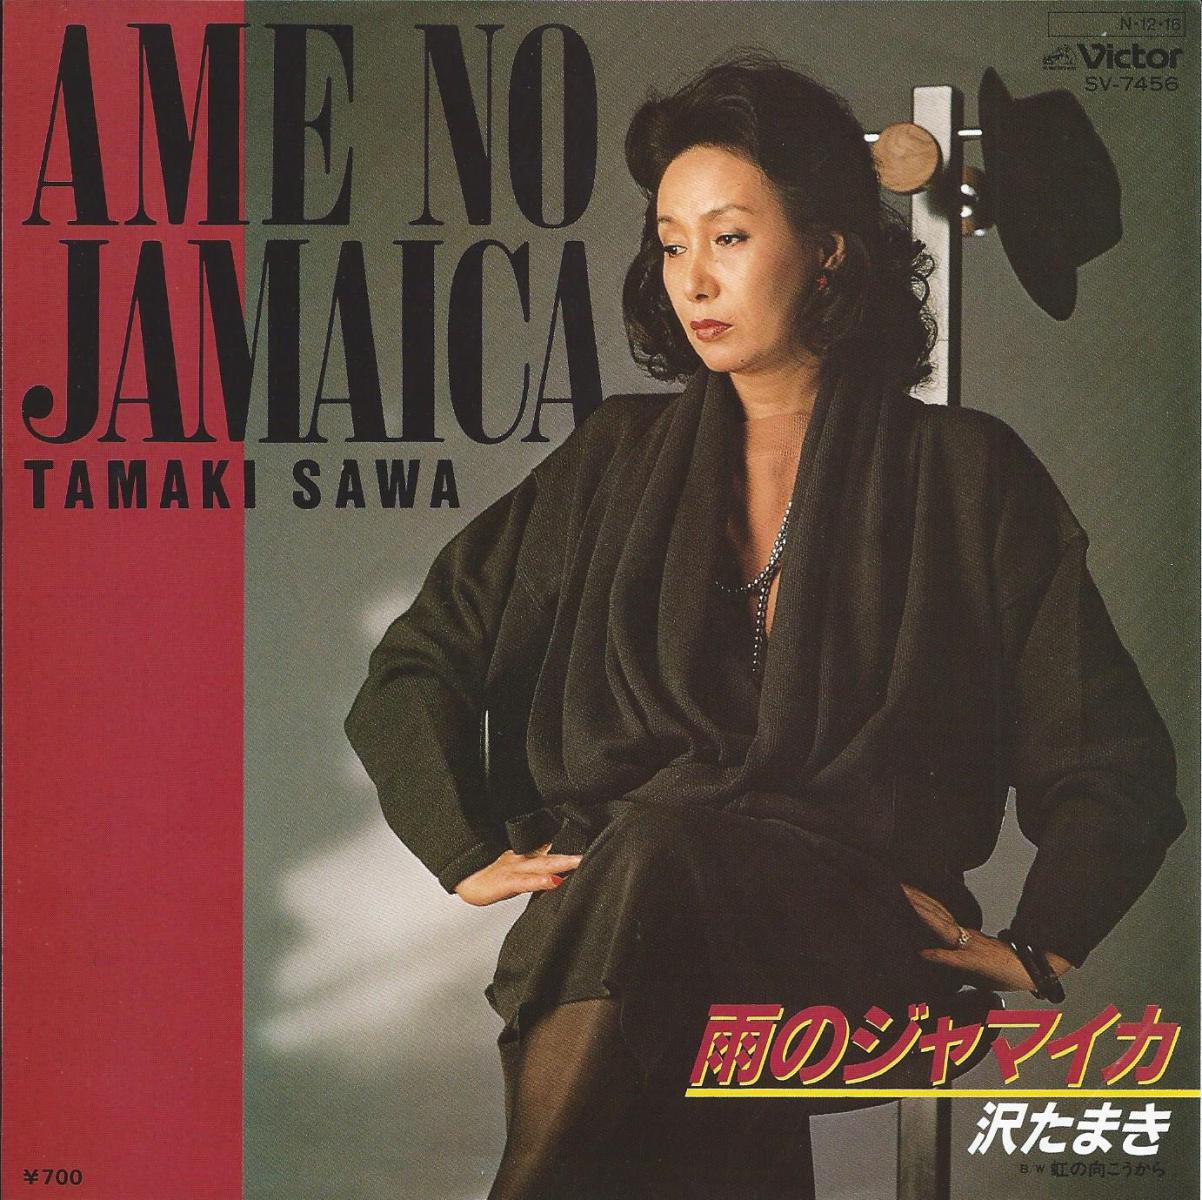 沢たまき TAMAKI SAWA / 雨のジャマイカ AME NO JAMAICA (7) - HIP TANK RECORDS